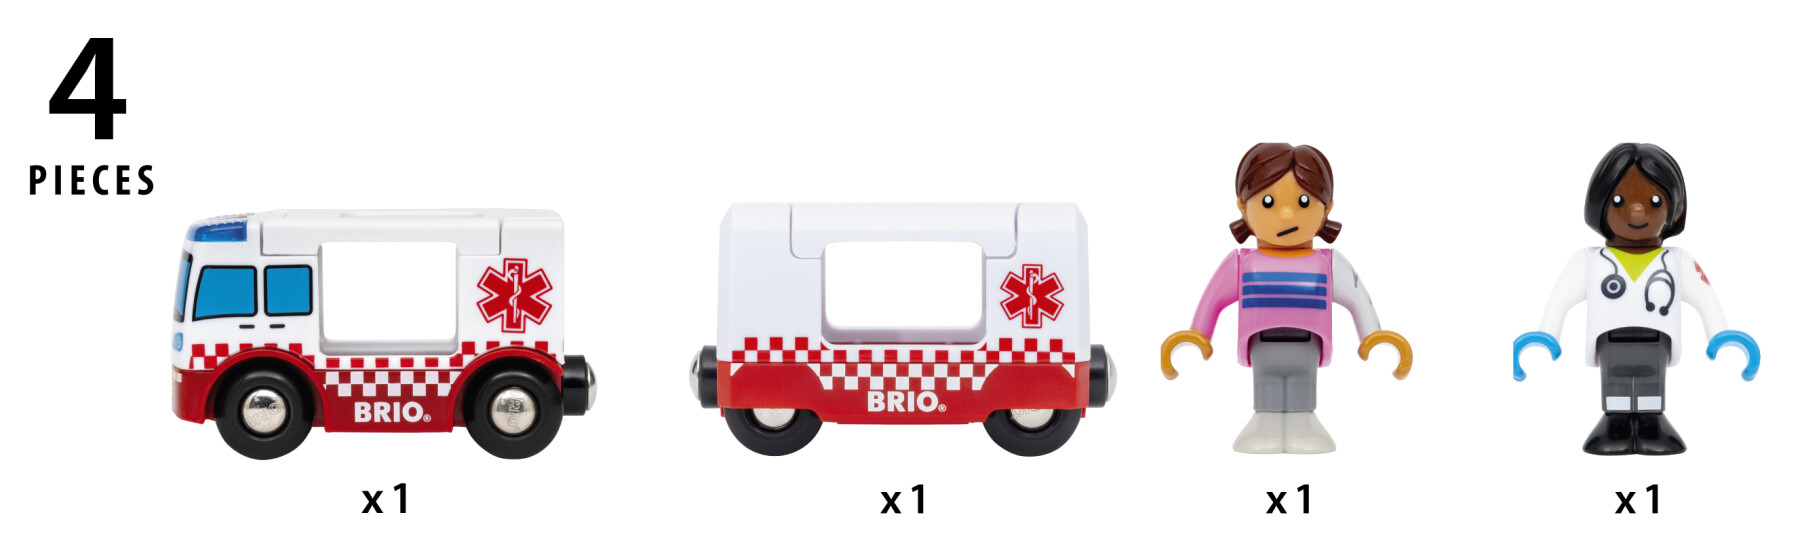 Brio world – ambulanza di soccorso 36035 | accessori per set di trenini per bambini dai 3 anni in su - BRIO